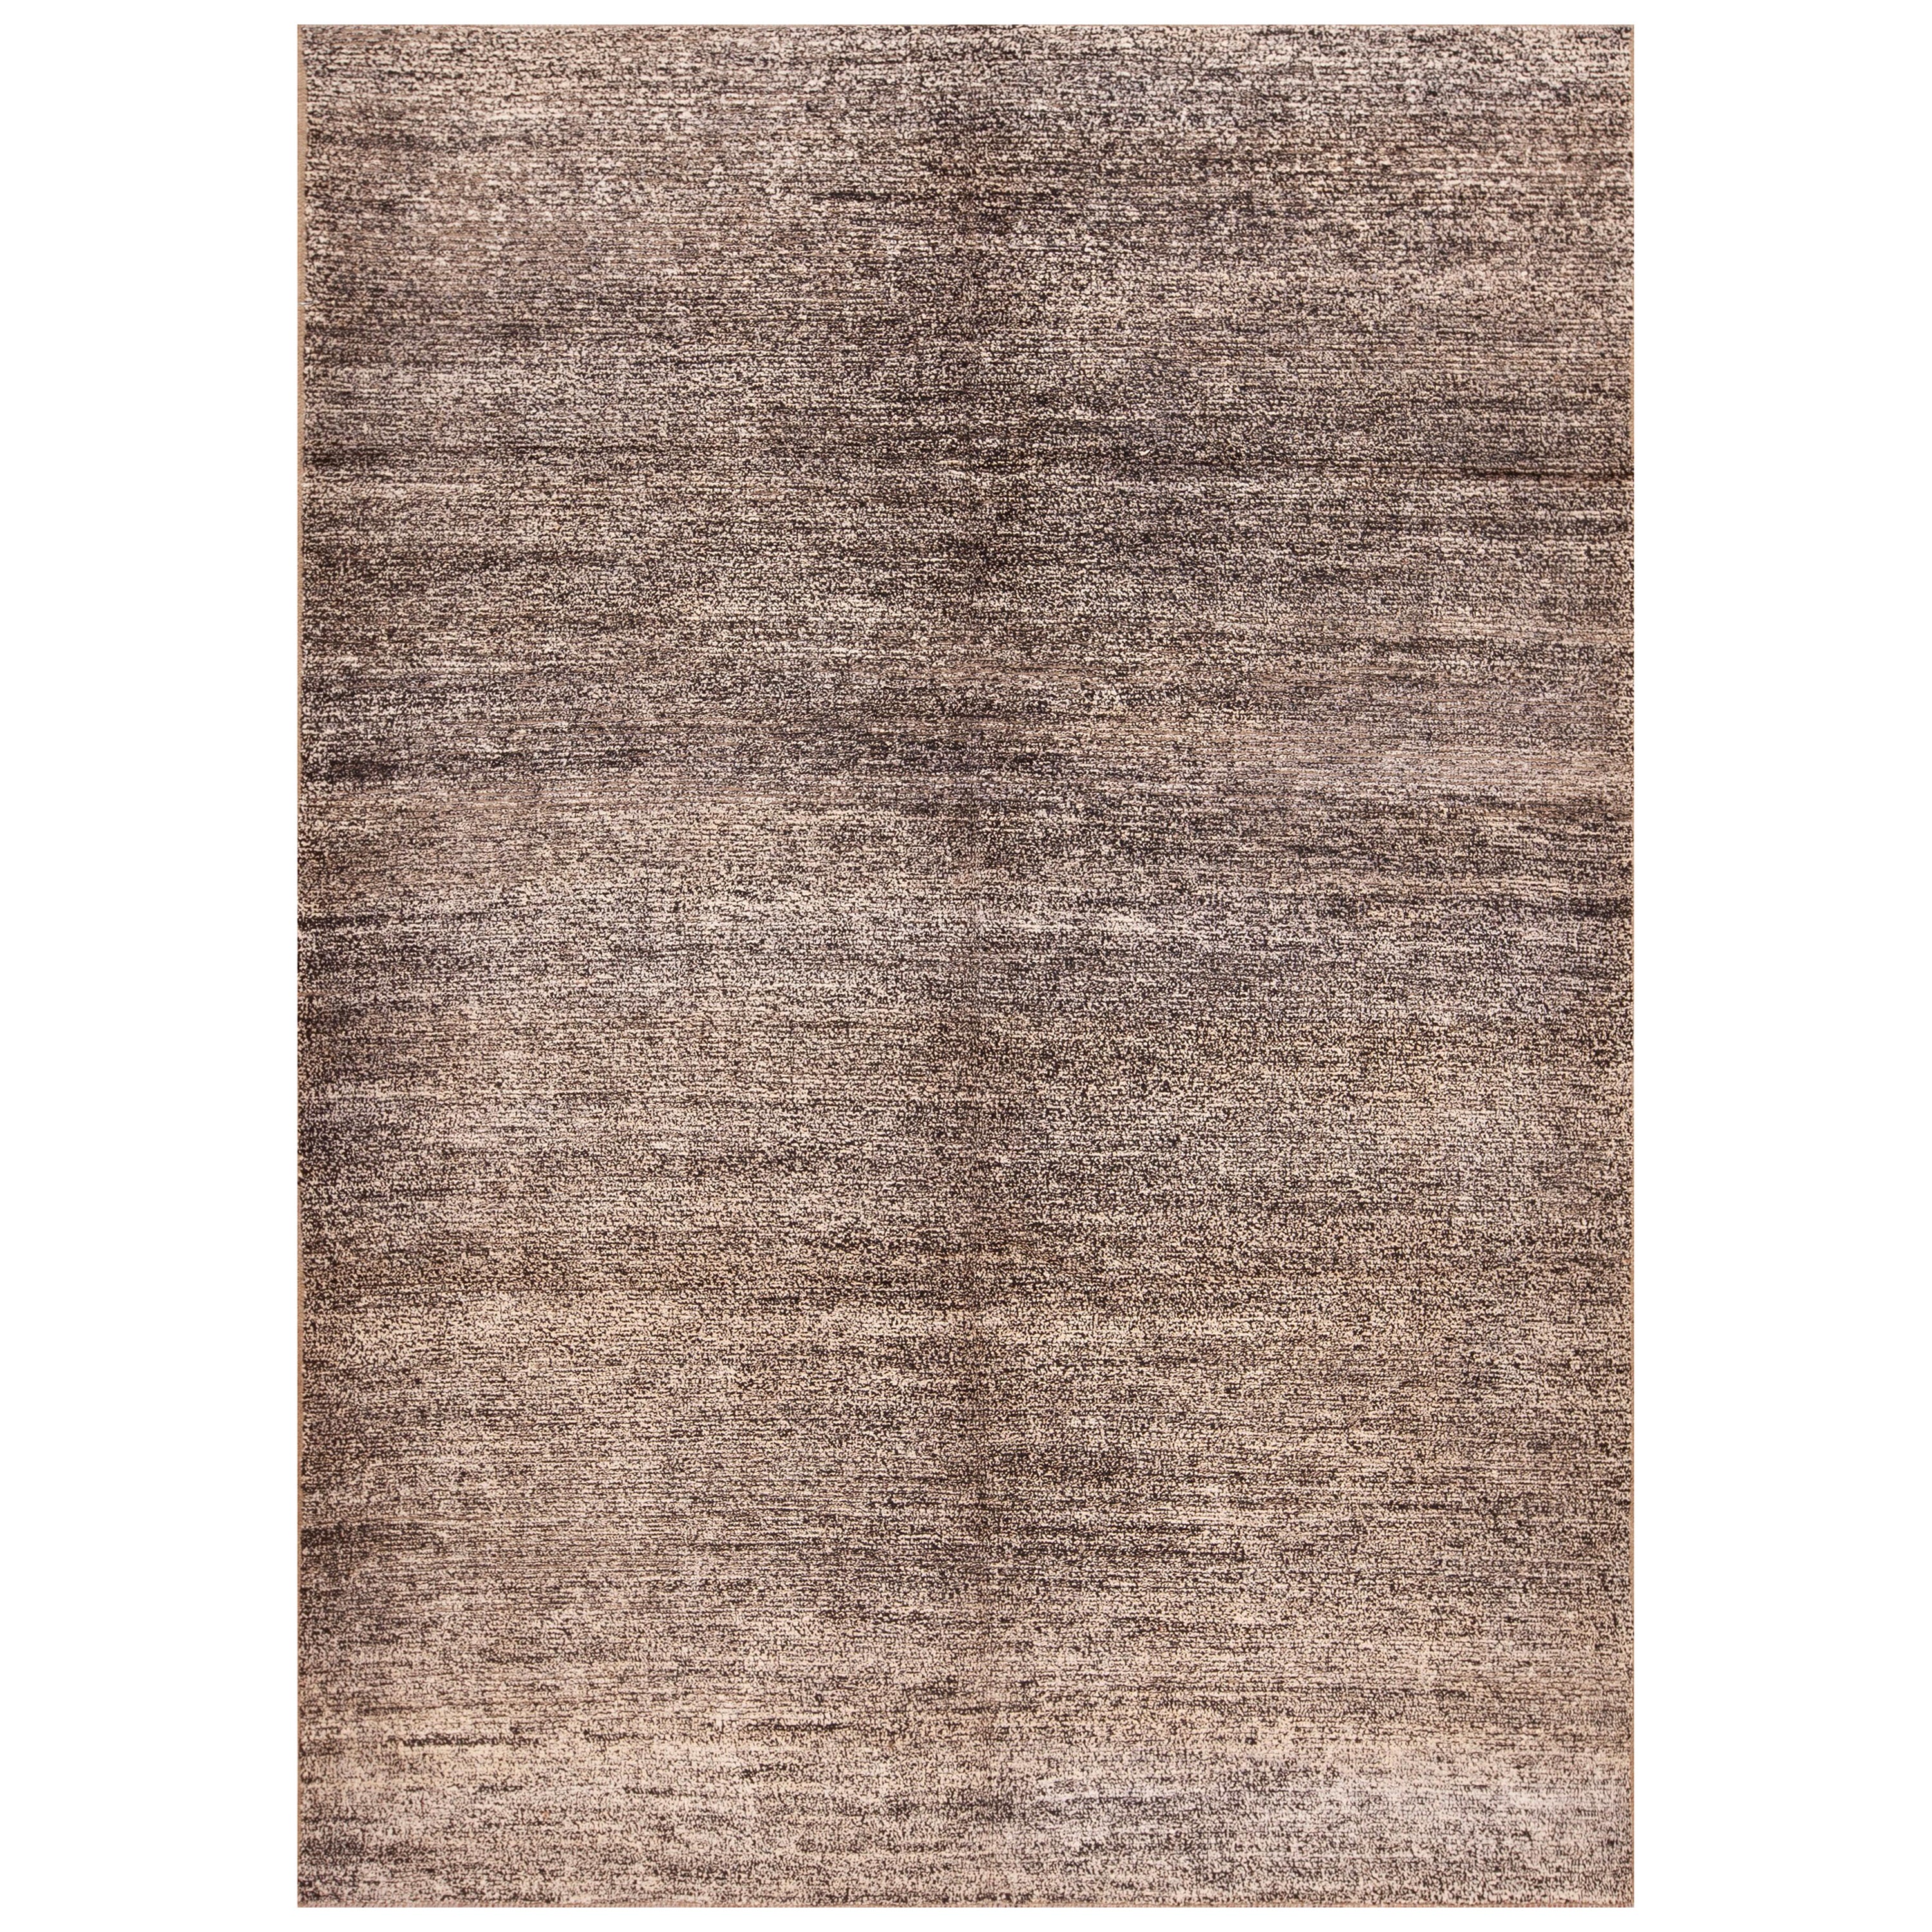 Collection Nazmiyal, couleur sel et poivre, tapis moderne abstrait de 6'6" x 9"